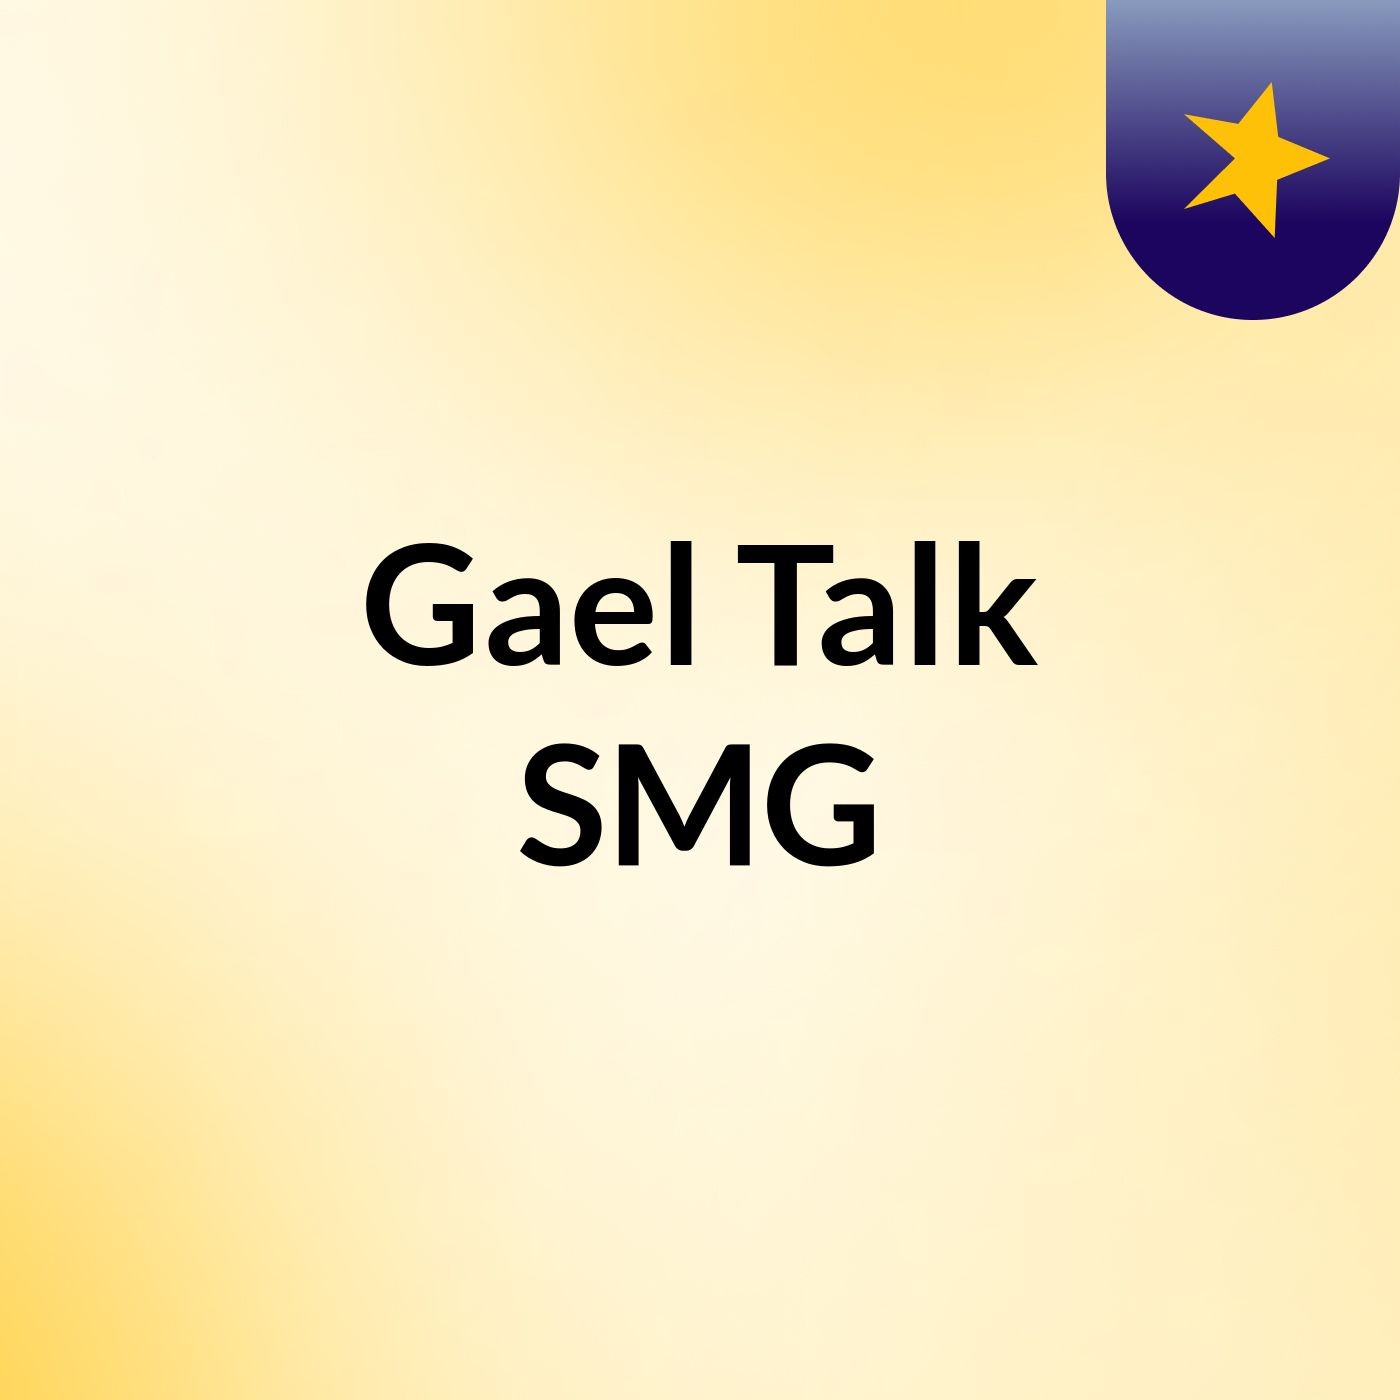 Gael Talk SMG